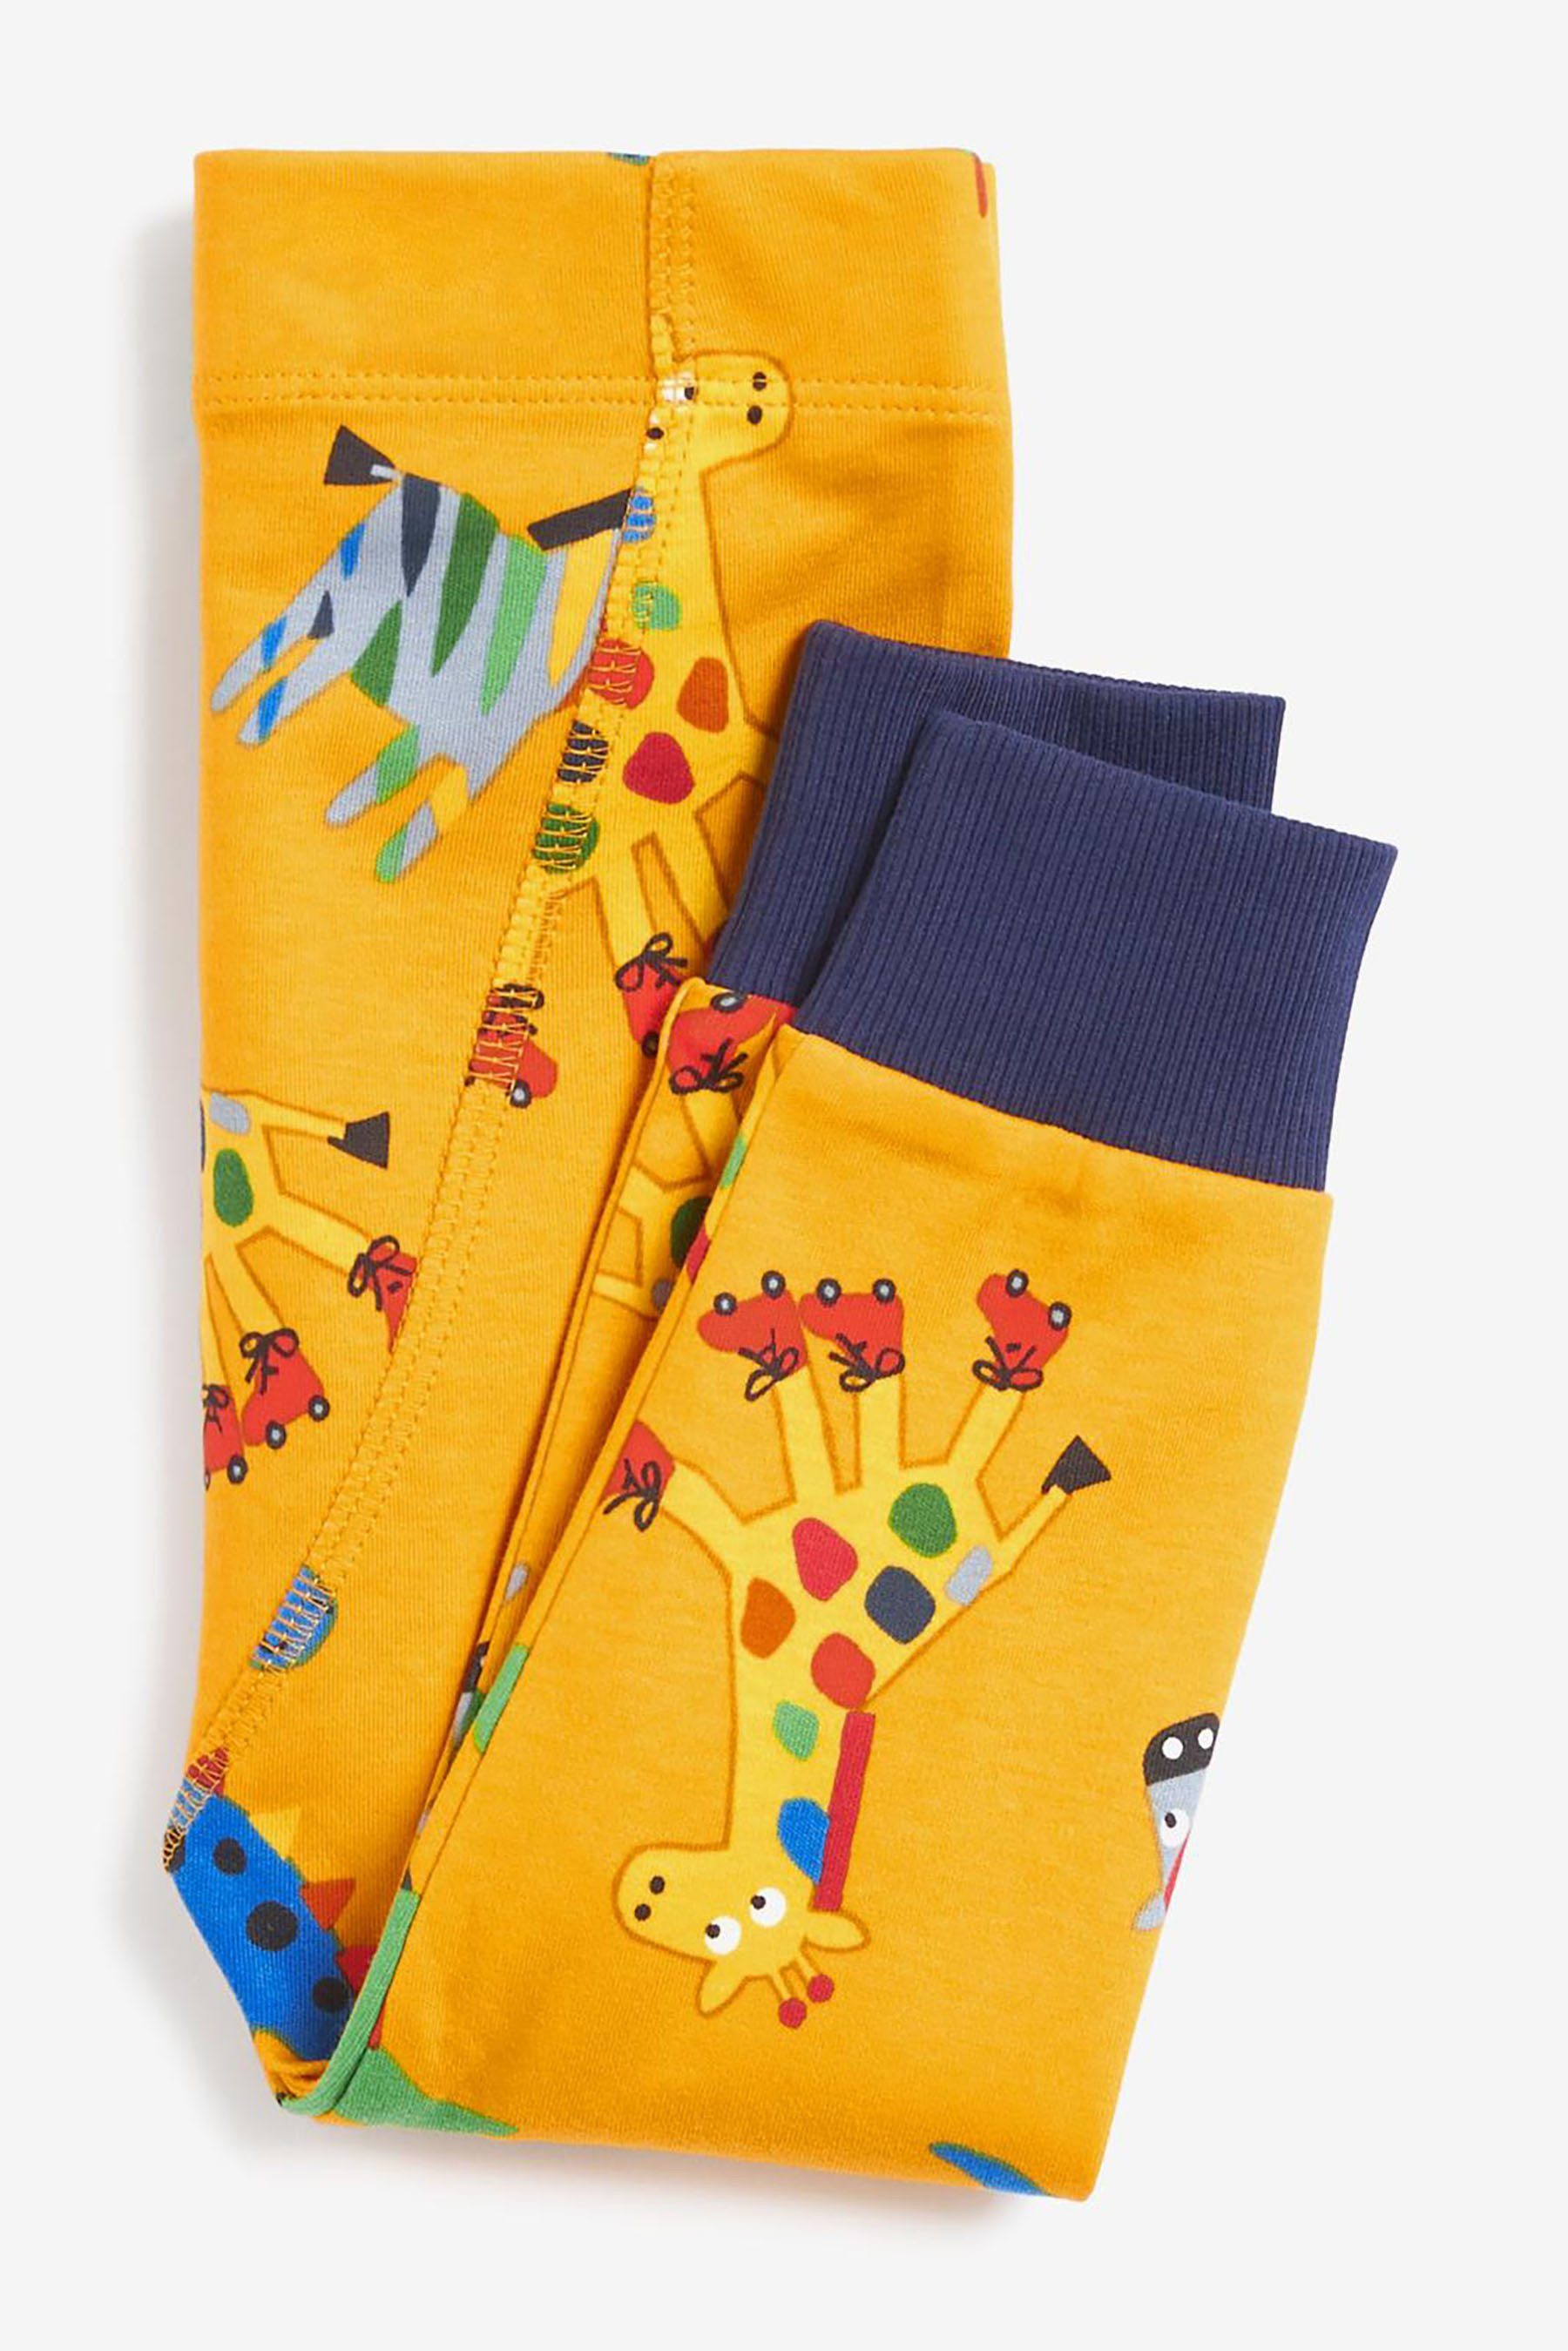 Next Pyjama Kuschelpyjamas, (6 3er-Pack tlg) Blue/Green/Yellow Animals